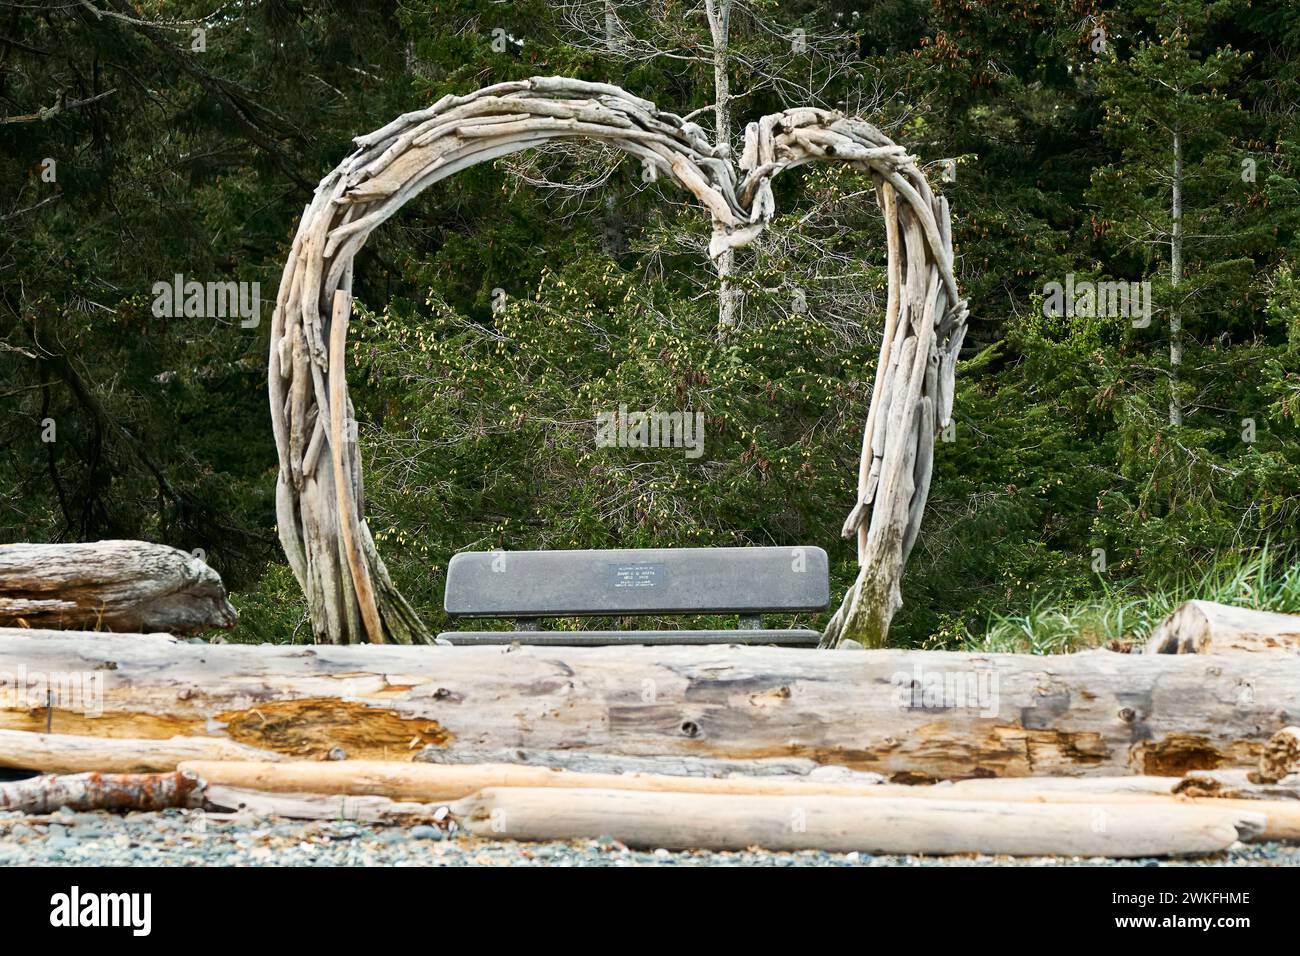 Ein Treibholzherz, das als Rahmen für Fotos an einem mit Drfitwood bedeckten Meeresstrand mit einer Bank und einem Waldhintergrund verwendet wird. Stockfoto